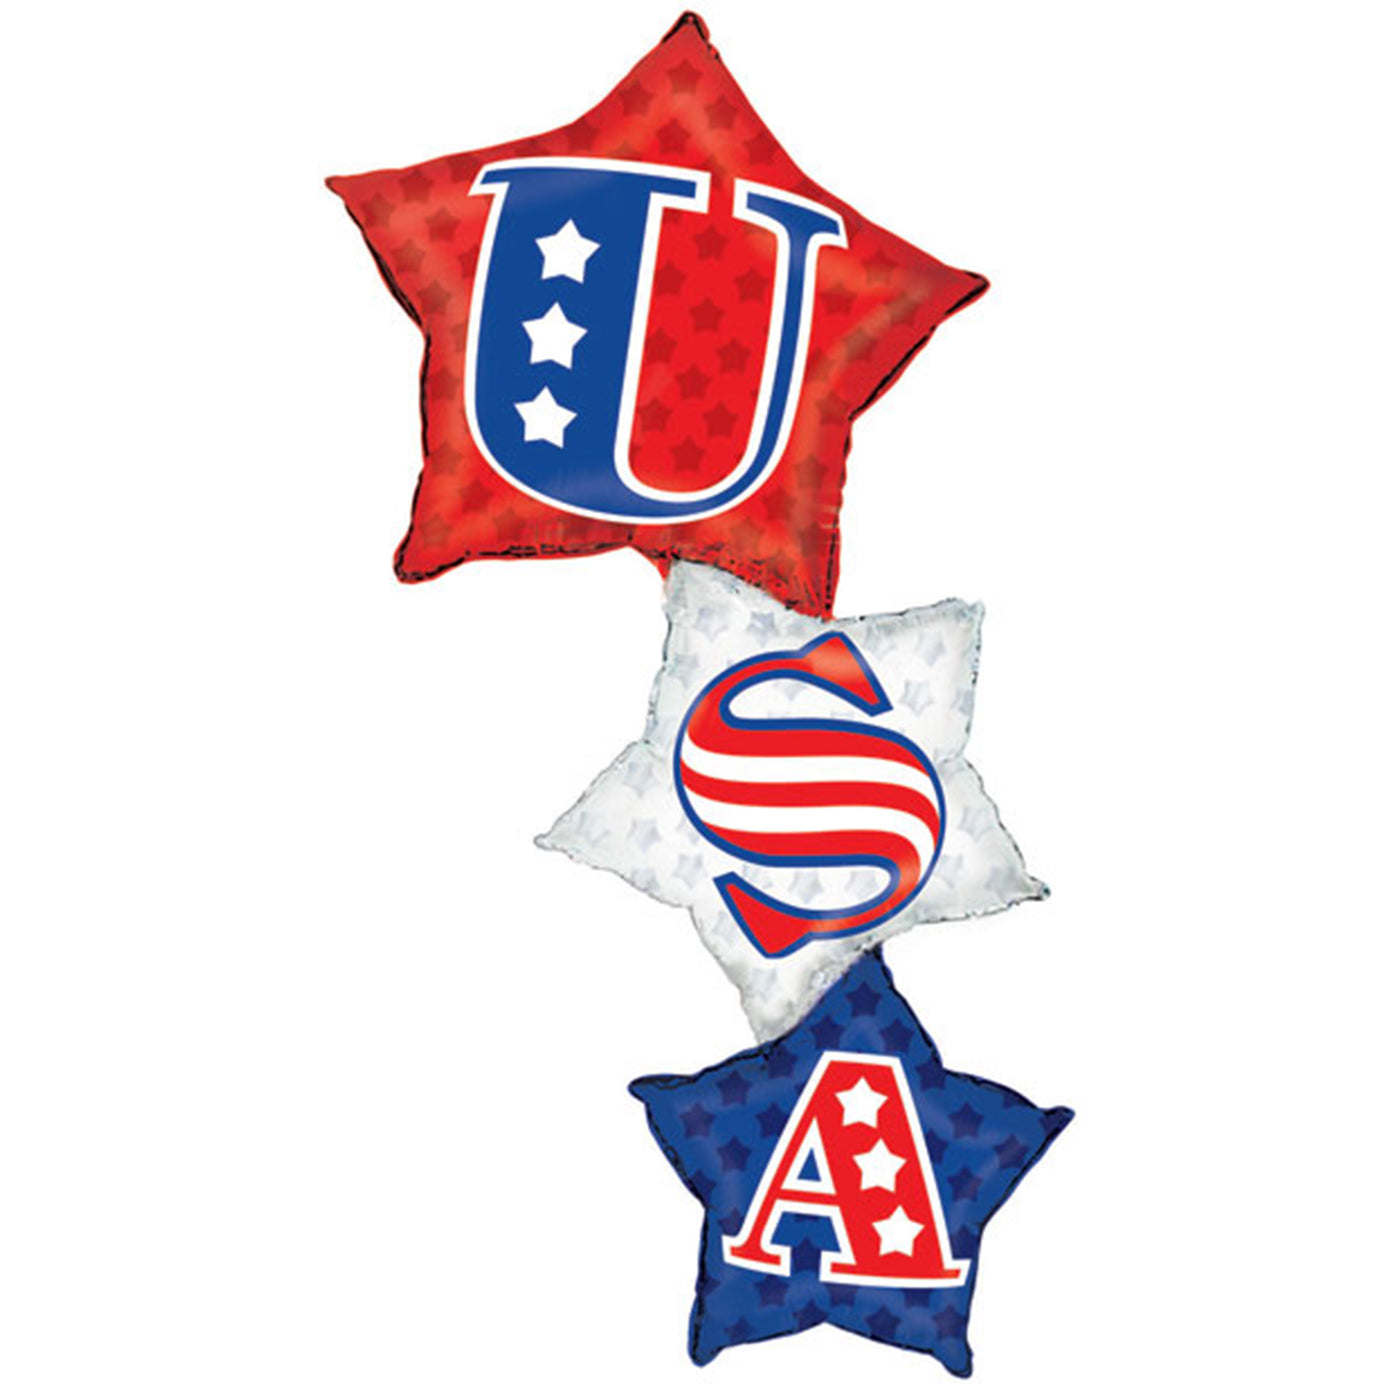 USA Star Stacker Balloon